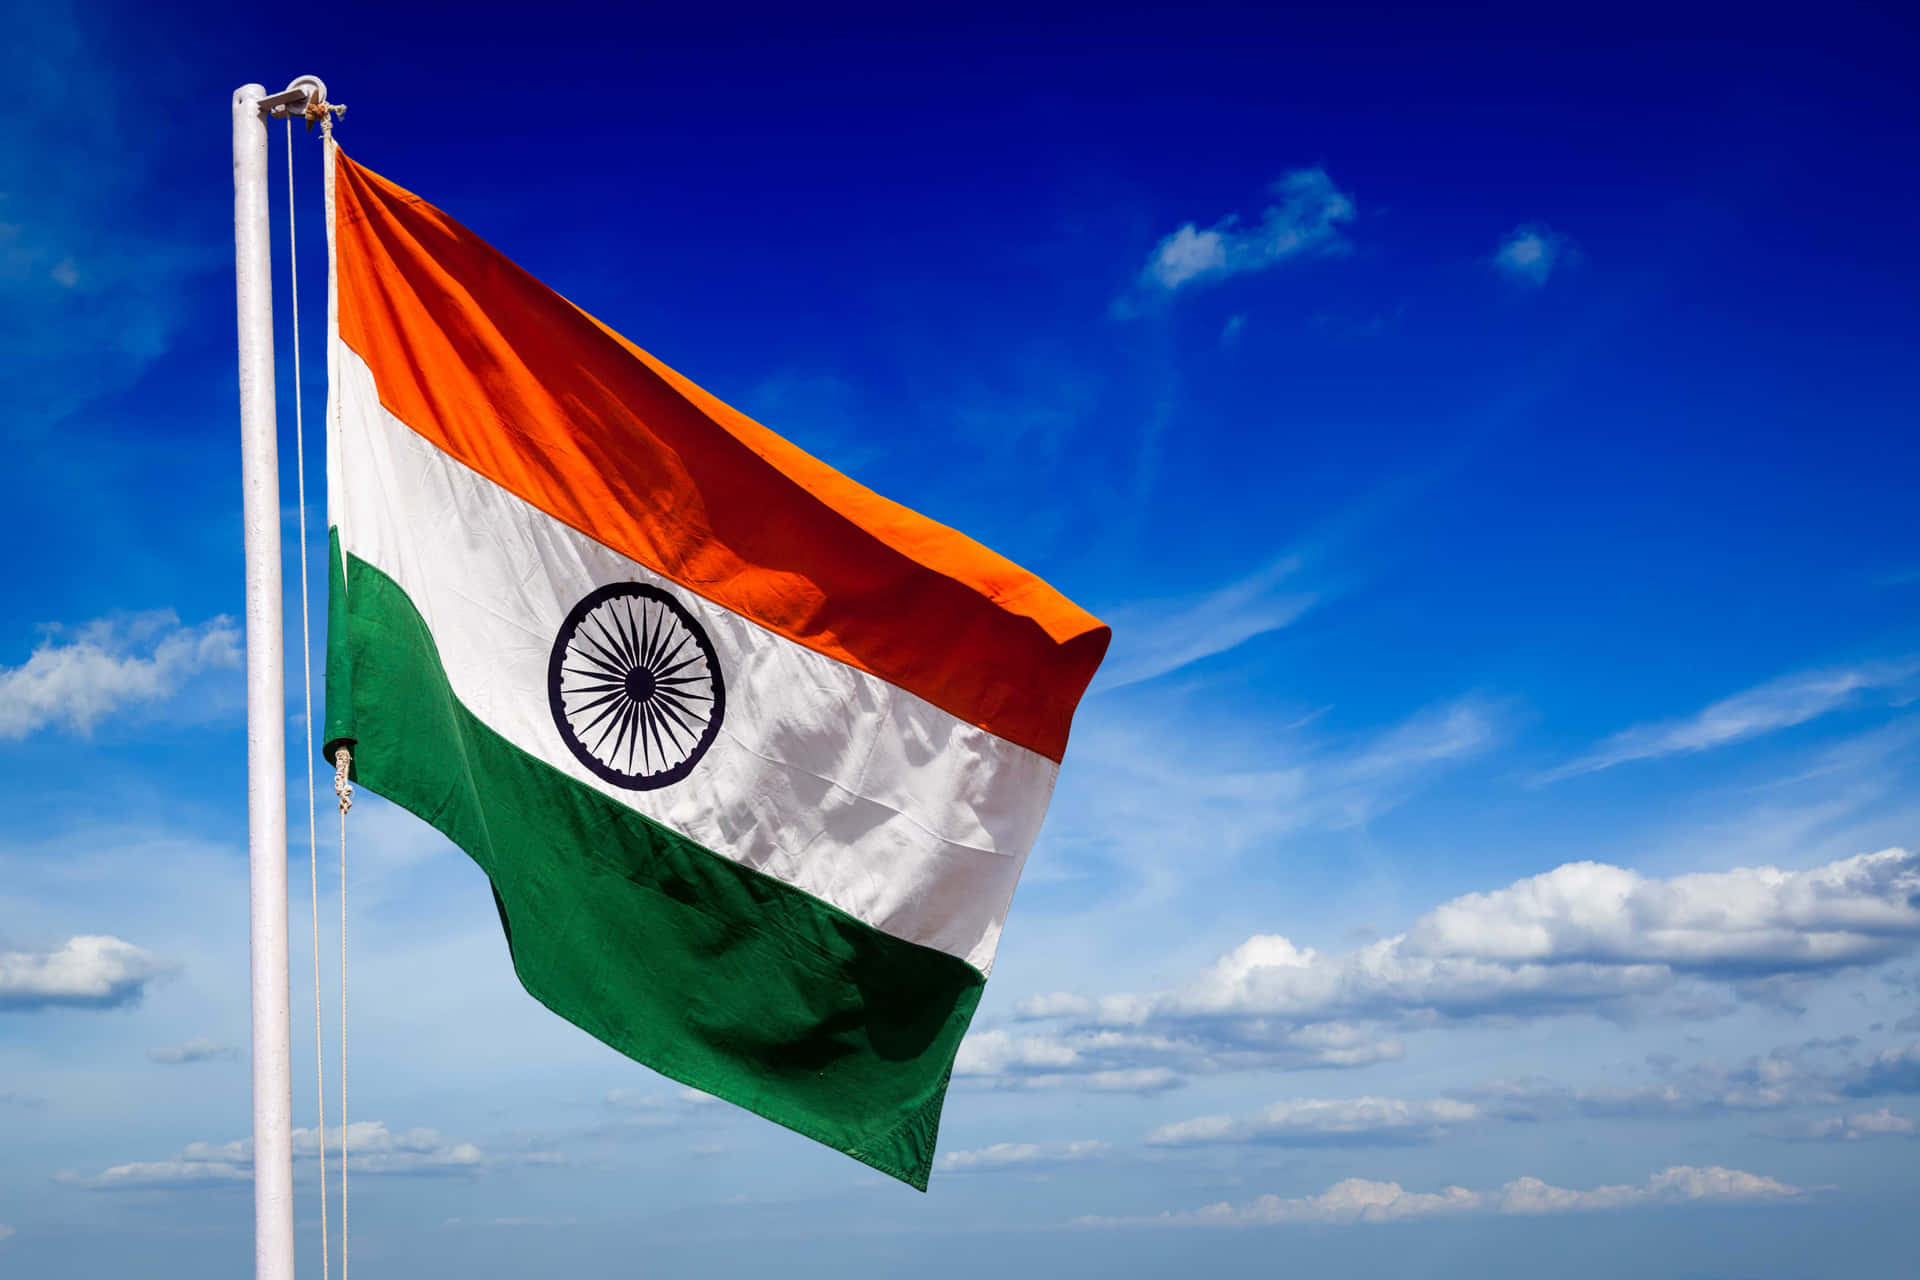 Muestratu Orgullo Por La Bandera Tricolor De India.